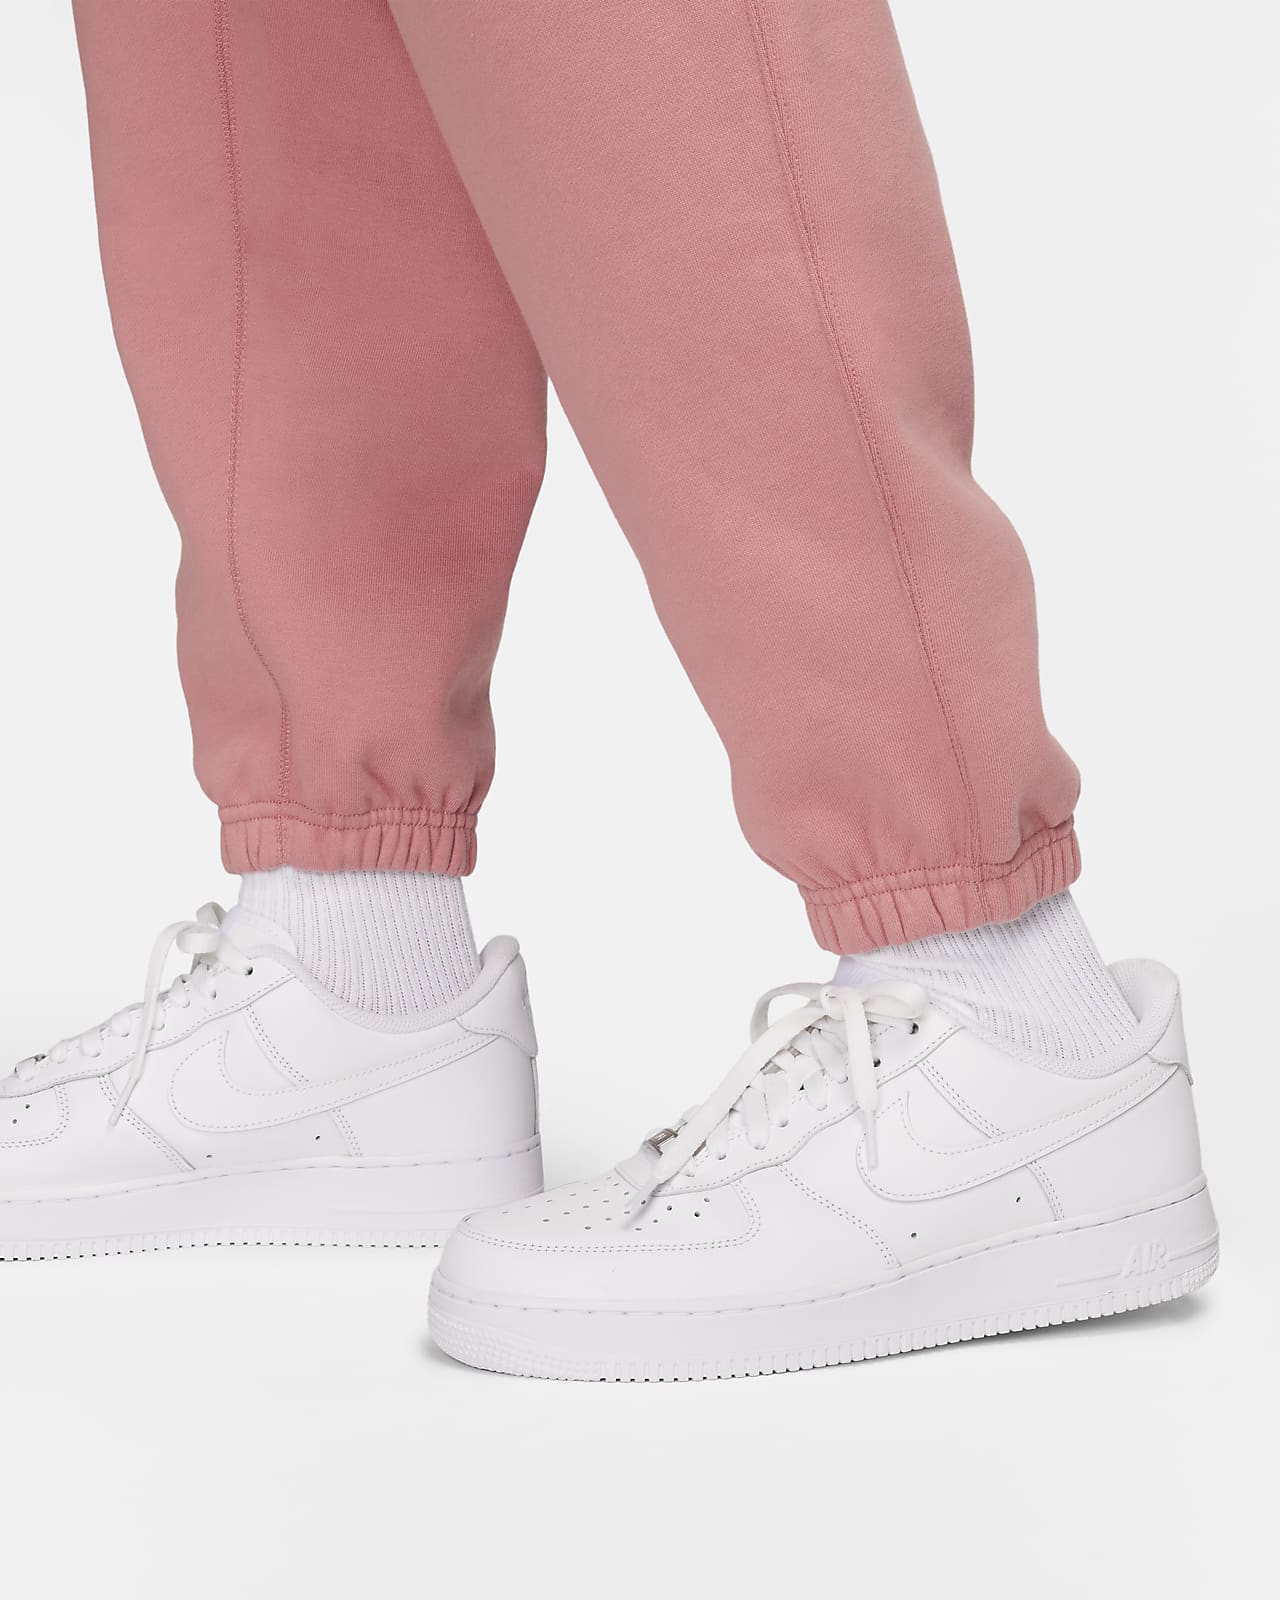 Pantalon survêtement Nike Solo Swoosh Men's Fleece Pants Grey